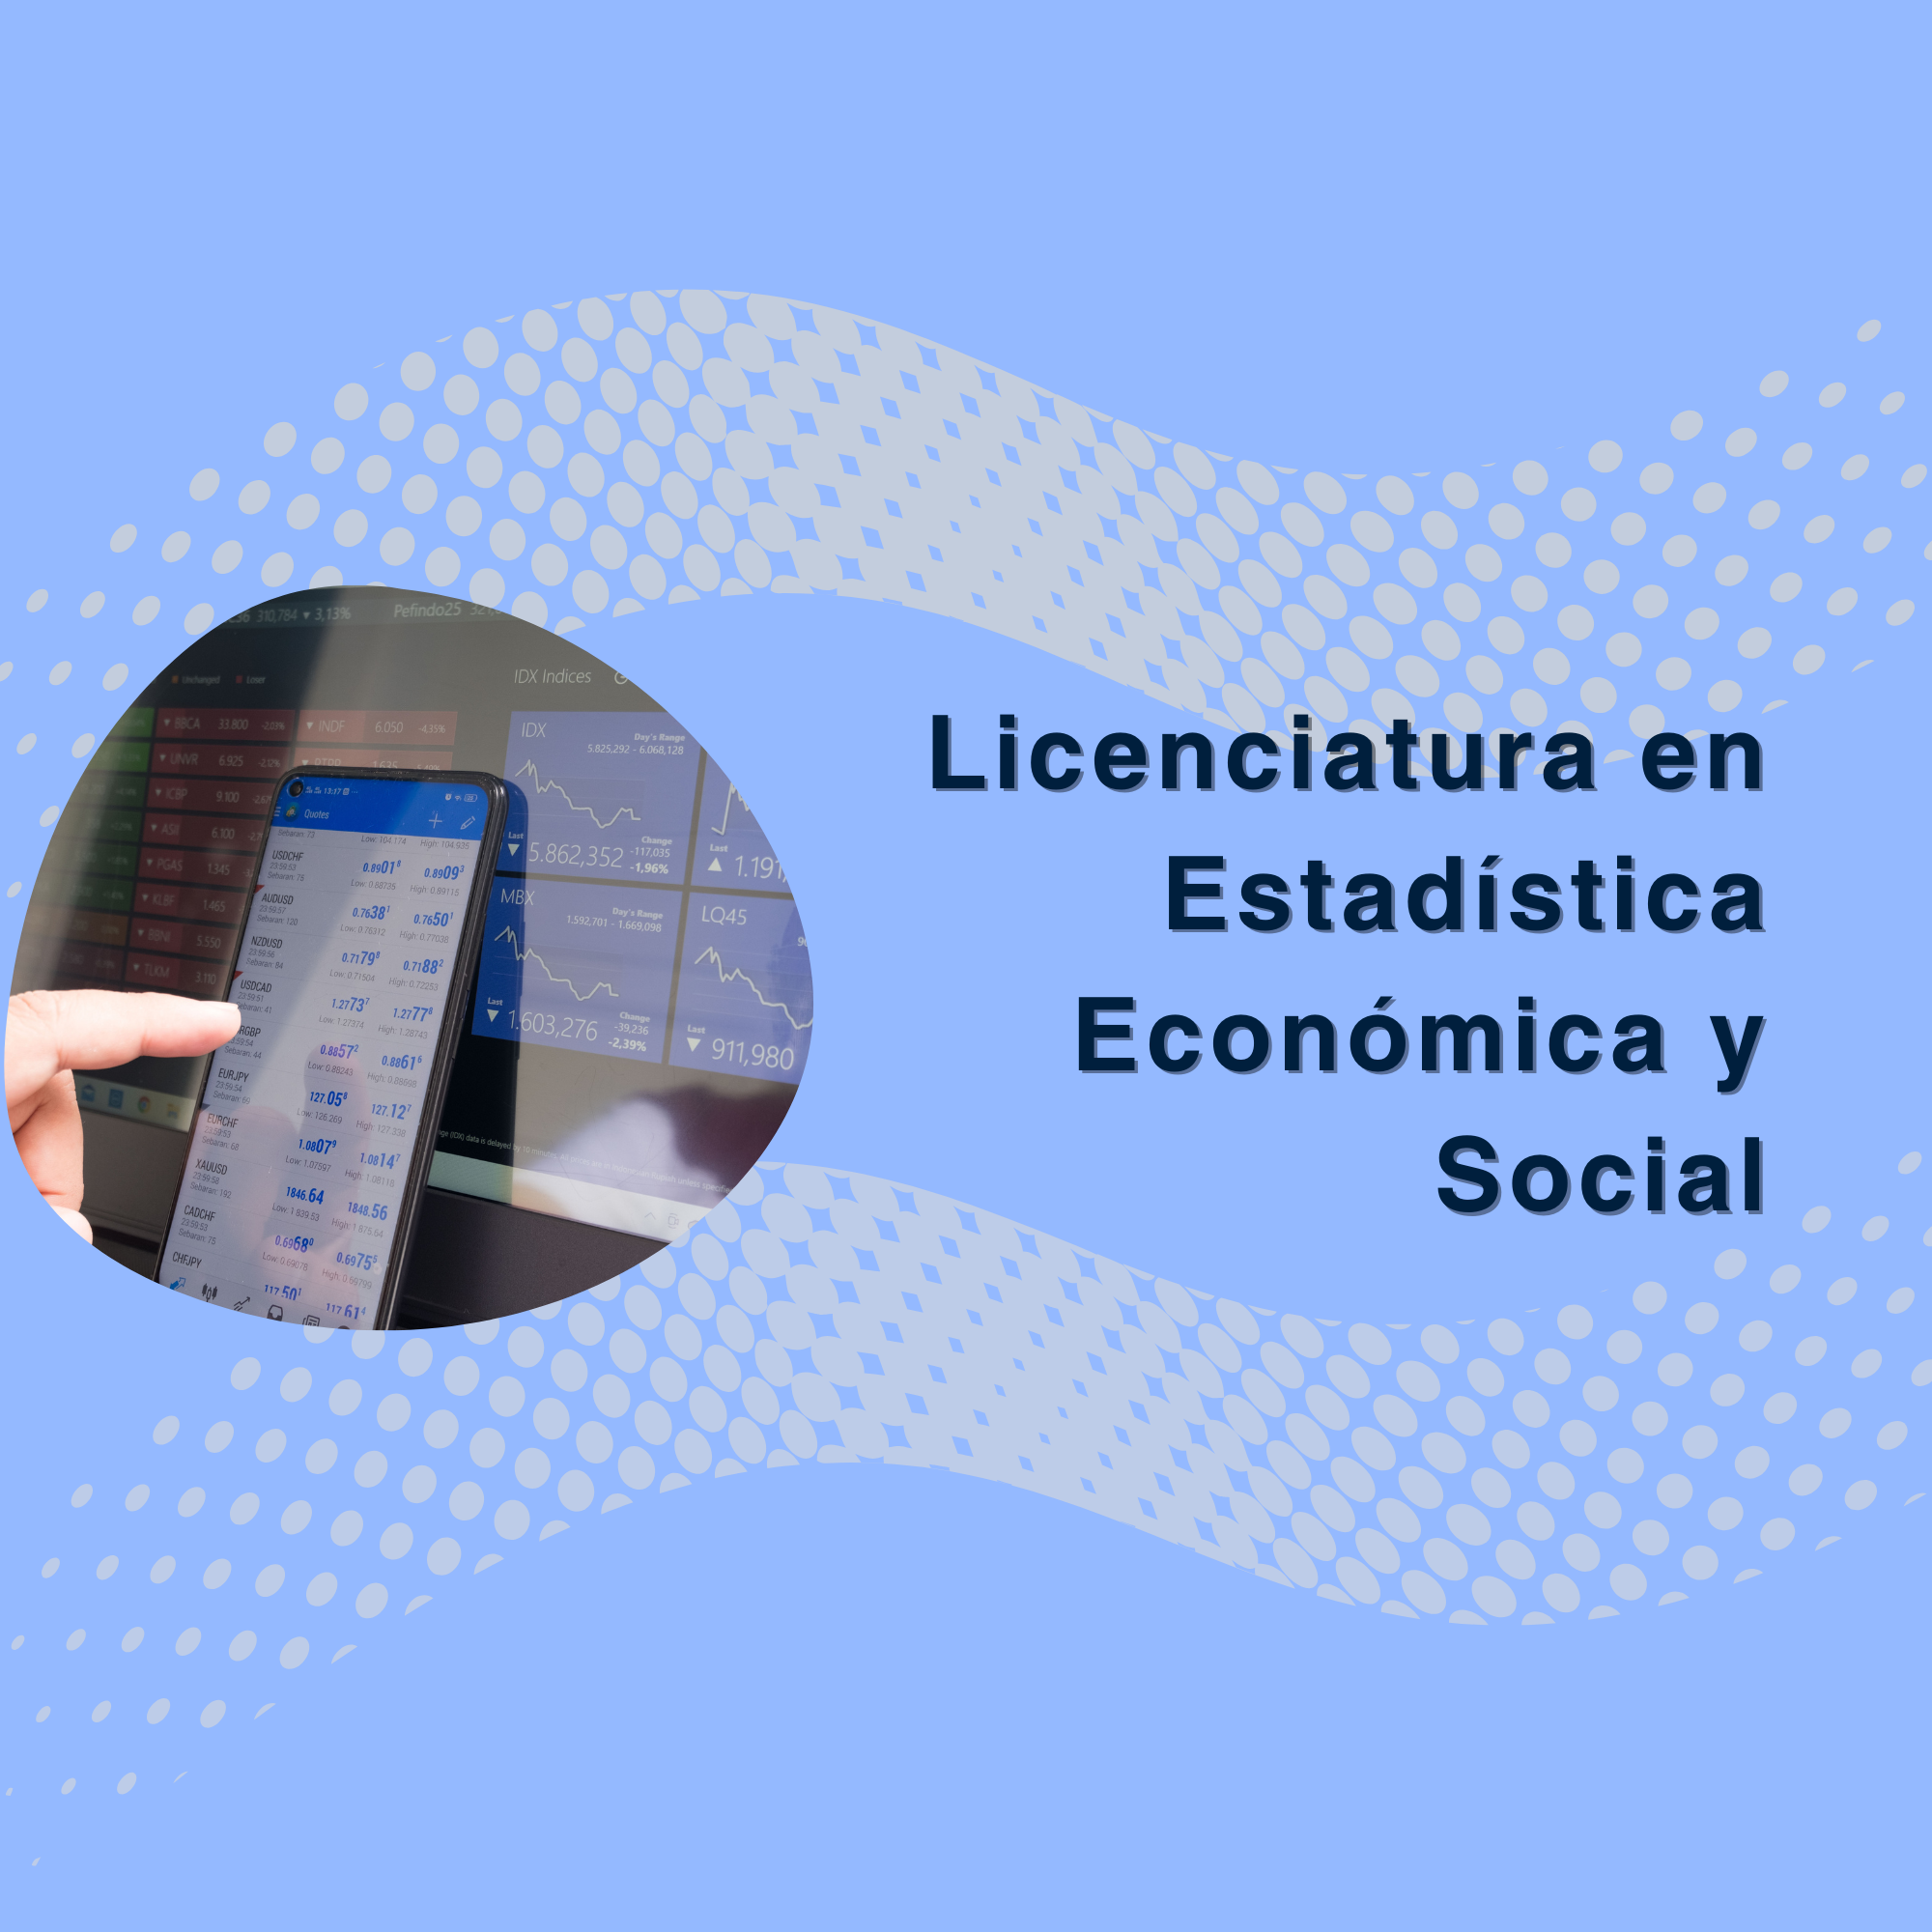 Licenciatura en Estadística Económica y Social